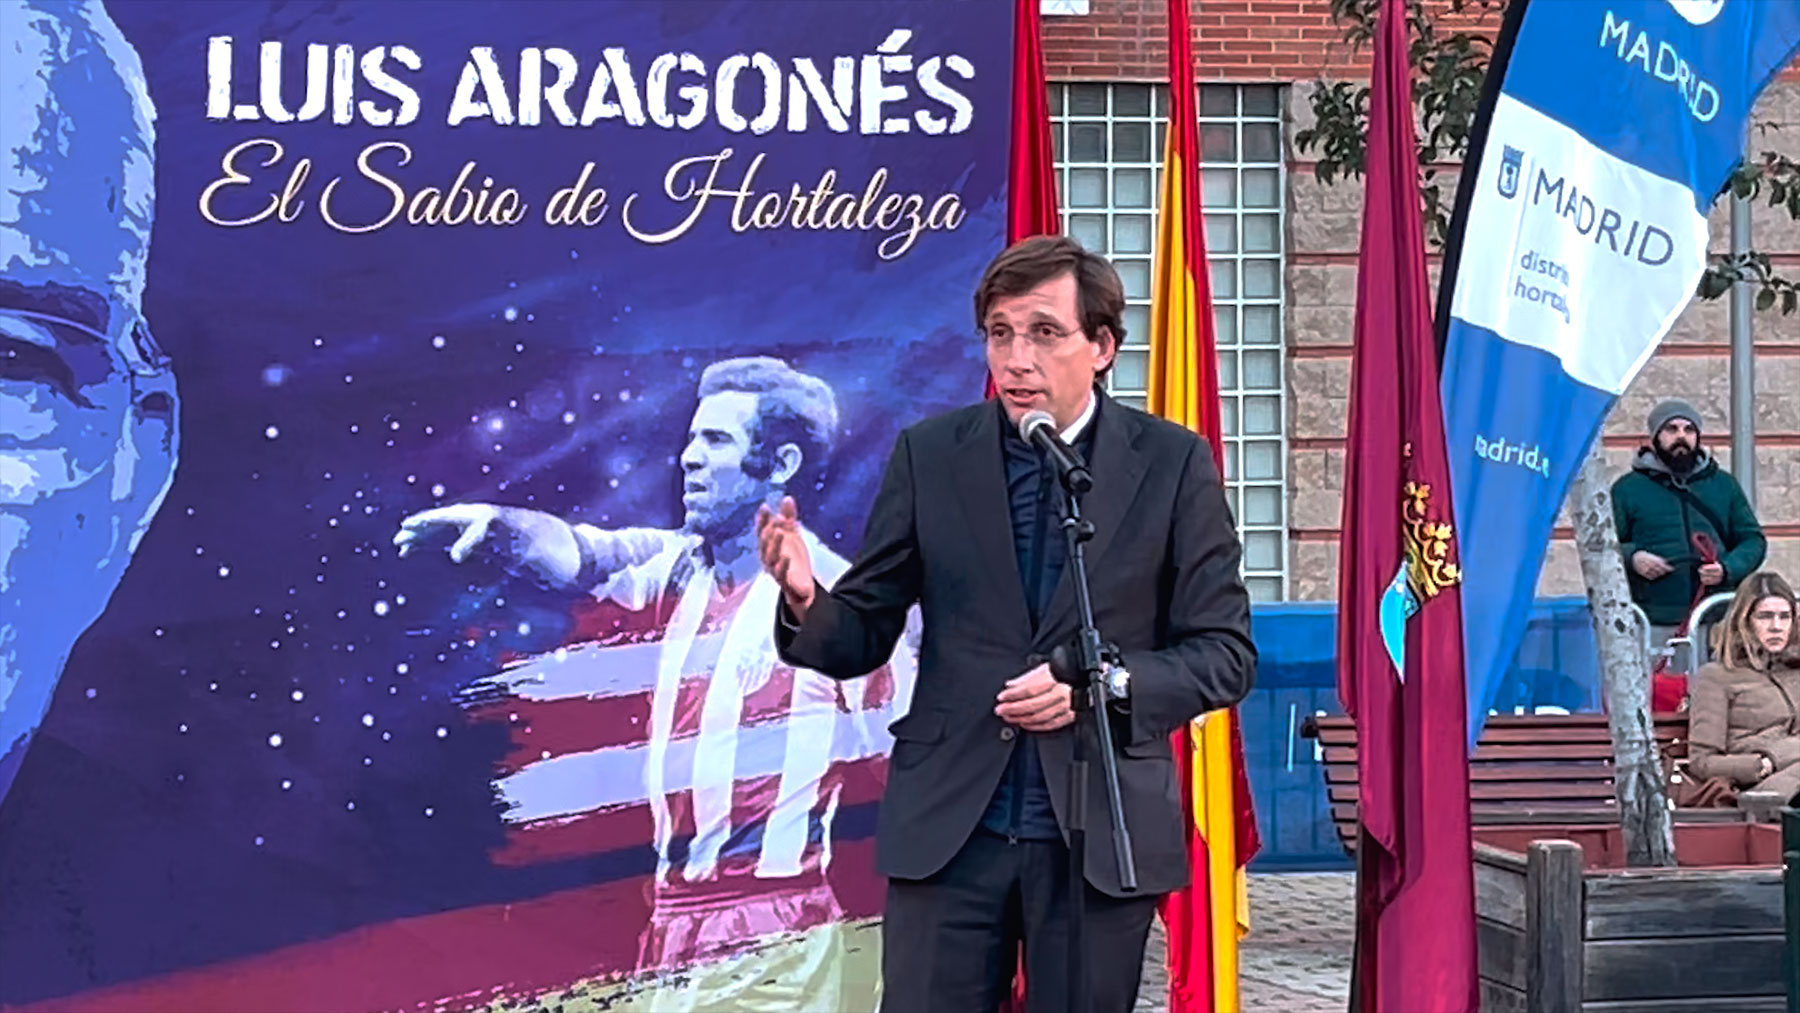 El discurso de Almeida en el homenaje a Luis Aragonés